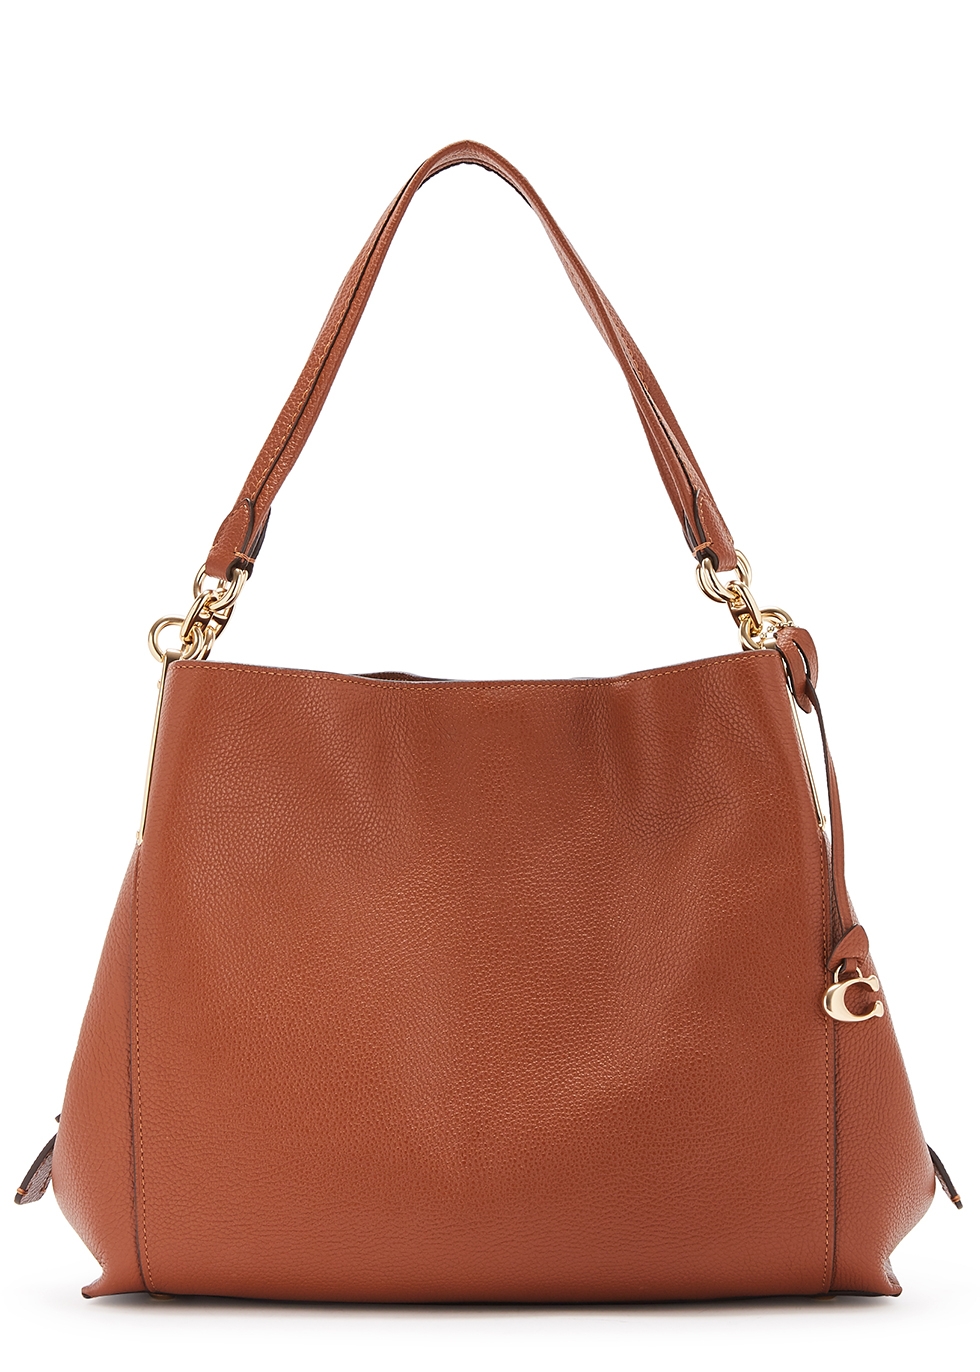 Dalton brown leather hobo bag